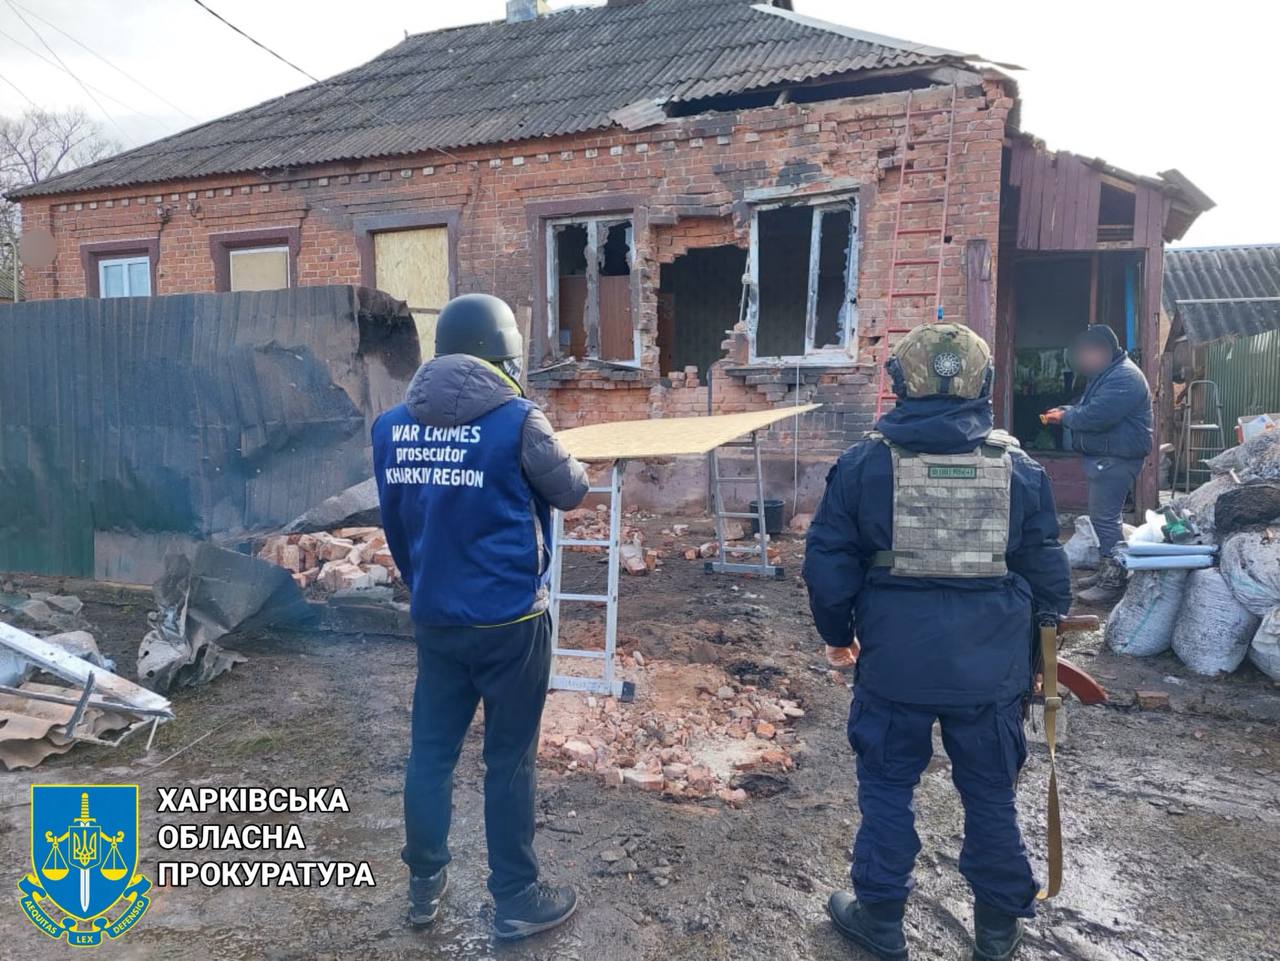 Гатили з мінометів по будинку на Харківщині окупанти